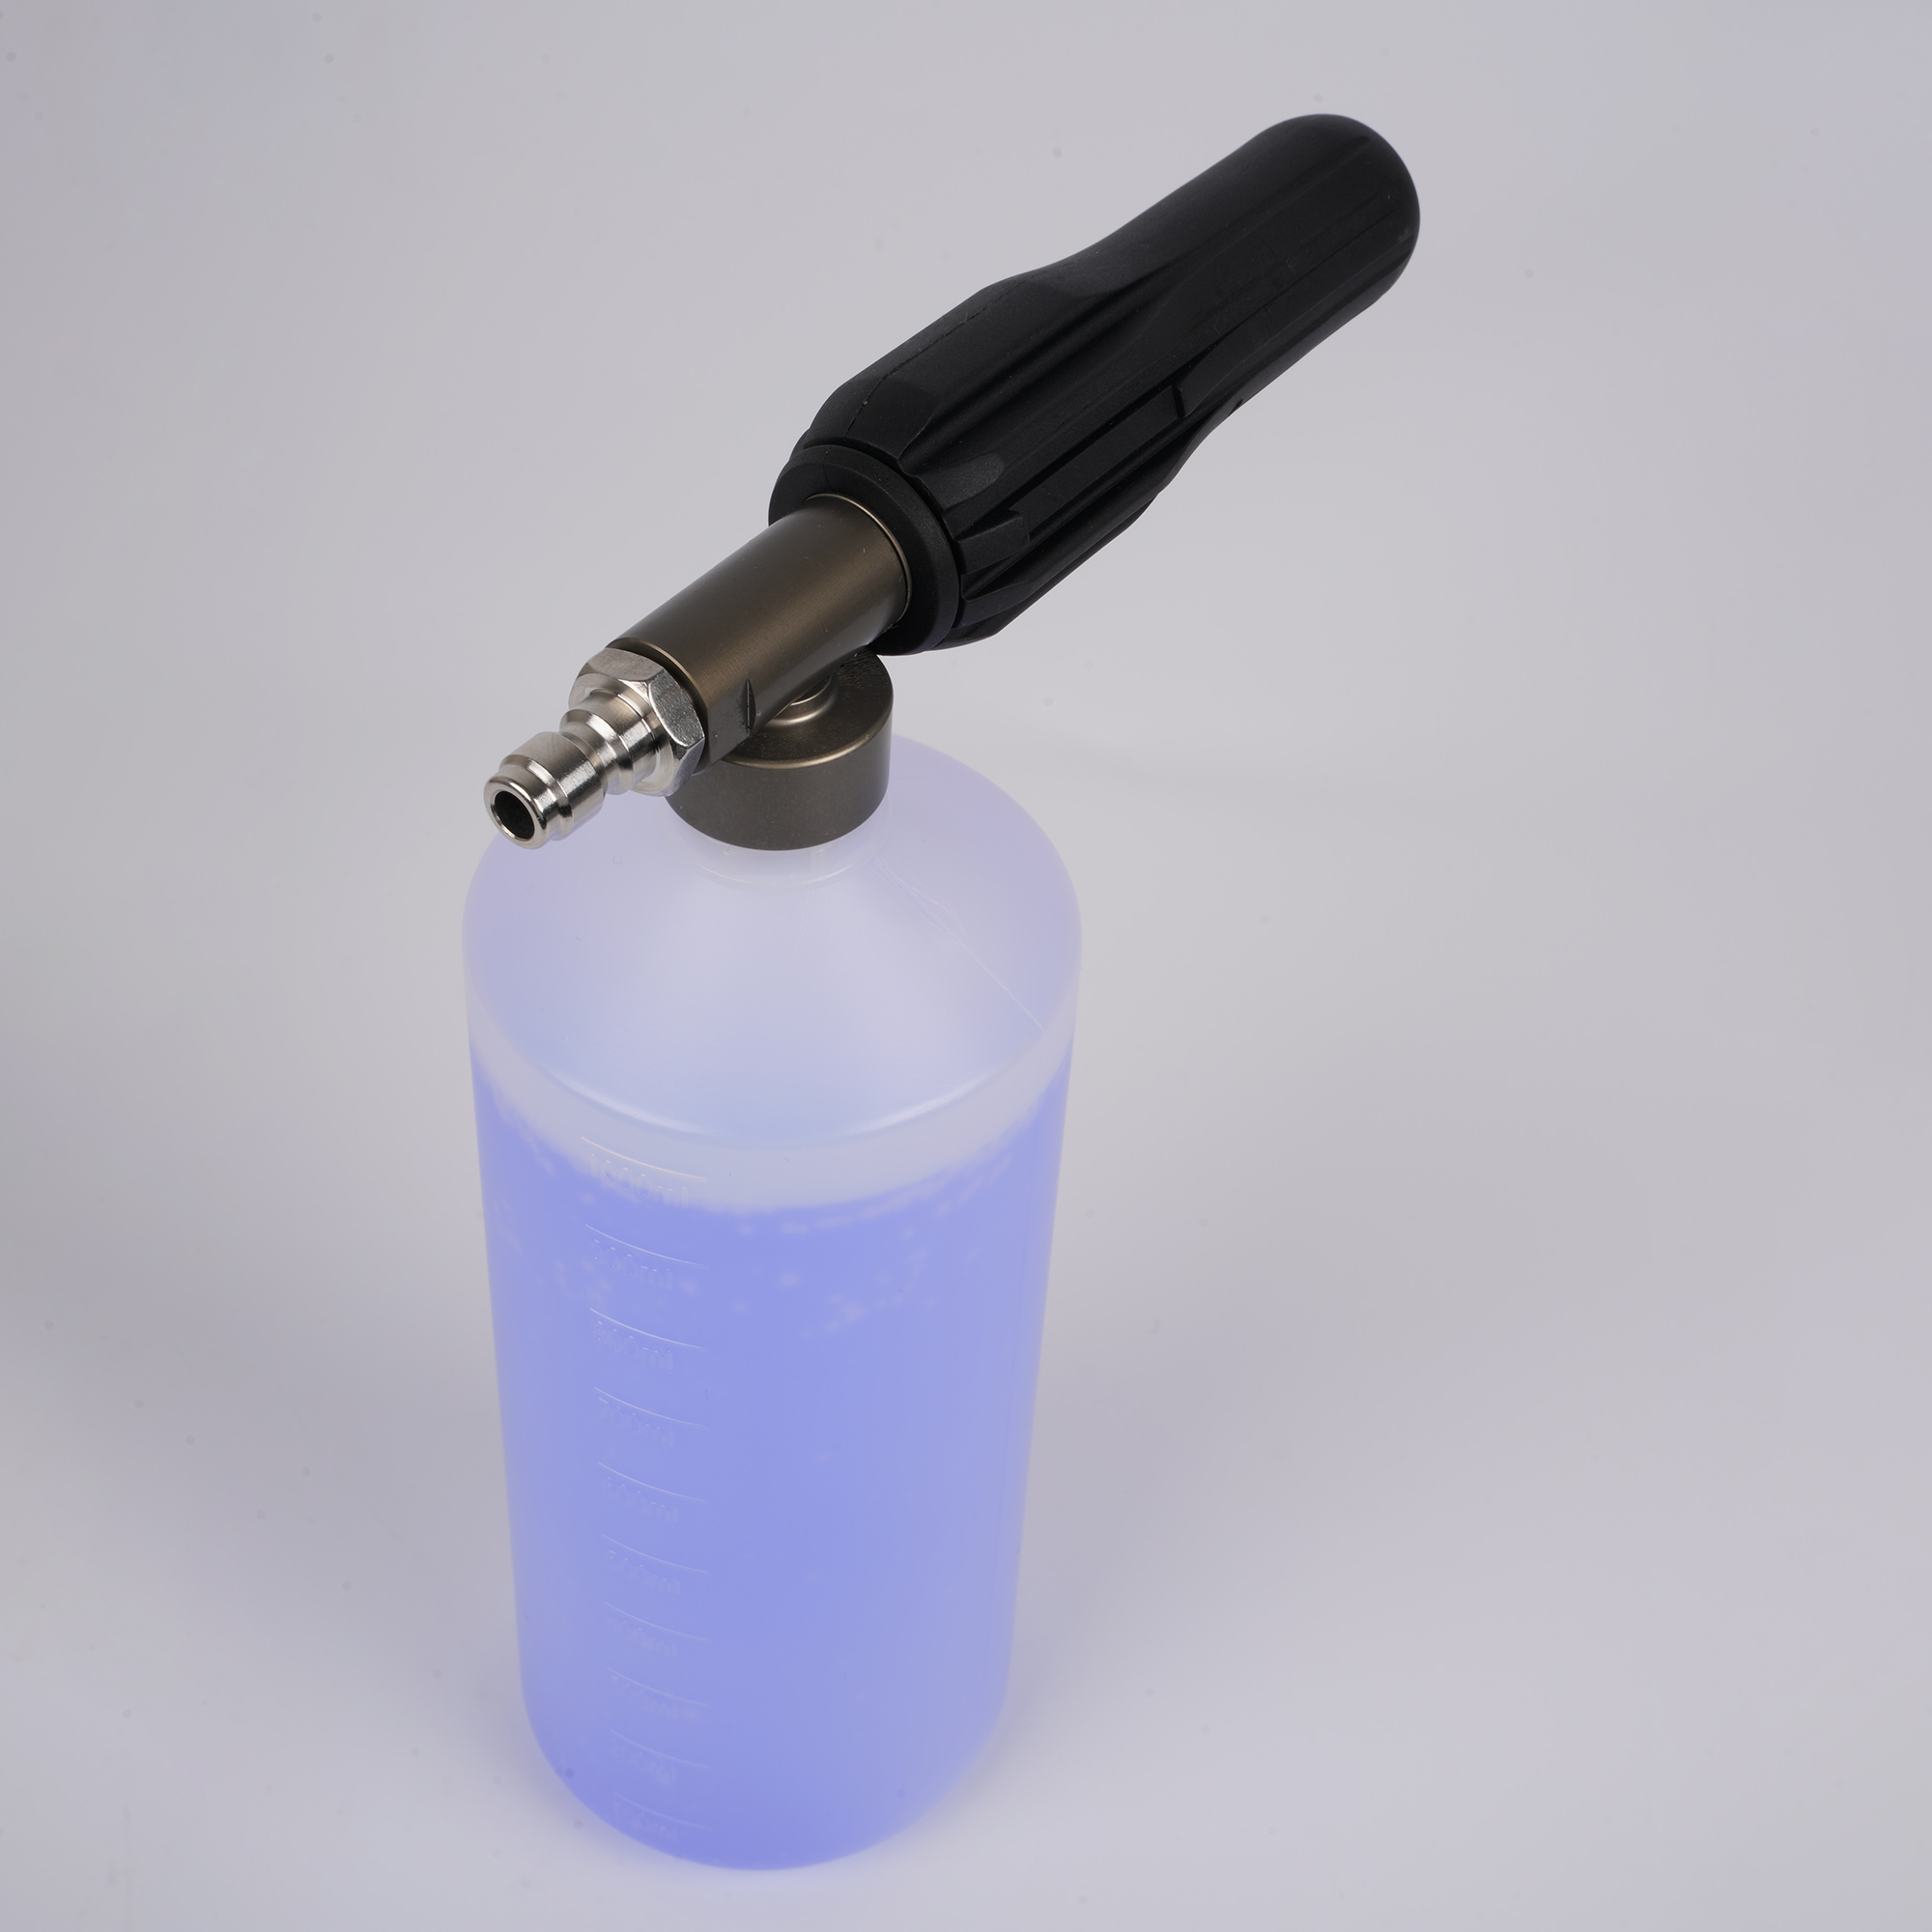 Canhão de espuma ajustável de 1 litro de garrafa de neve lança com conector rápido de 1/4 "para pistola de arruela de pressão